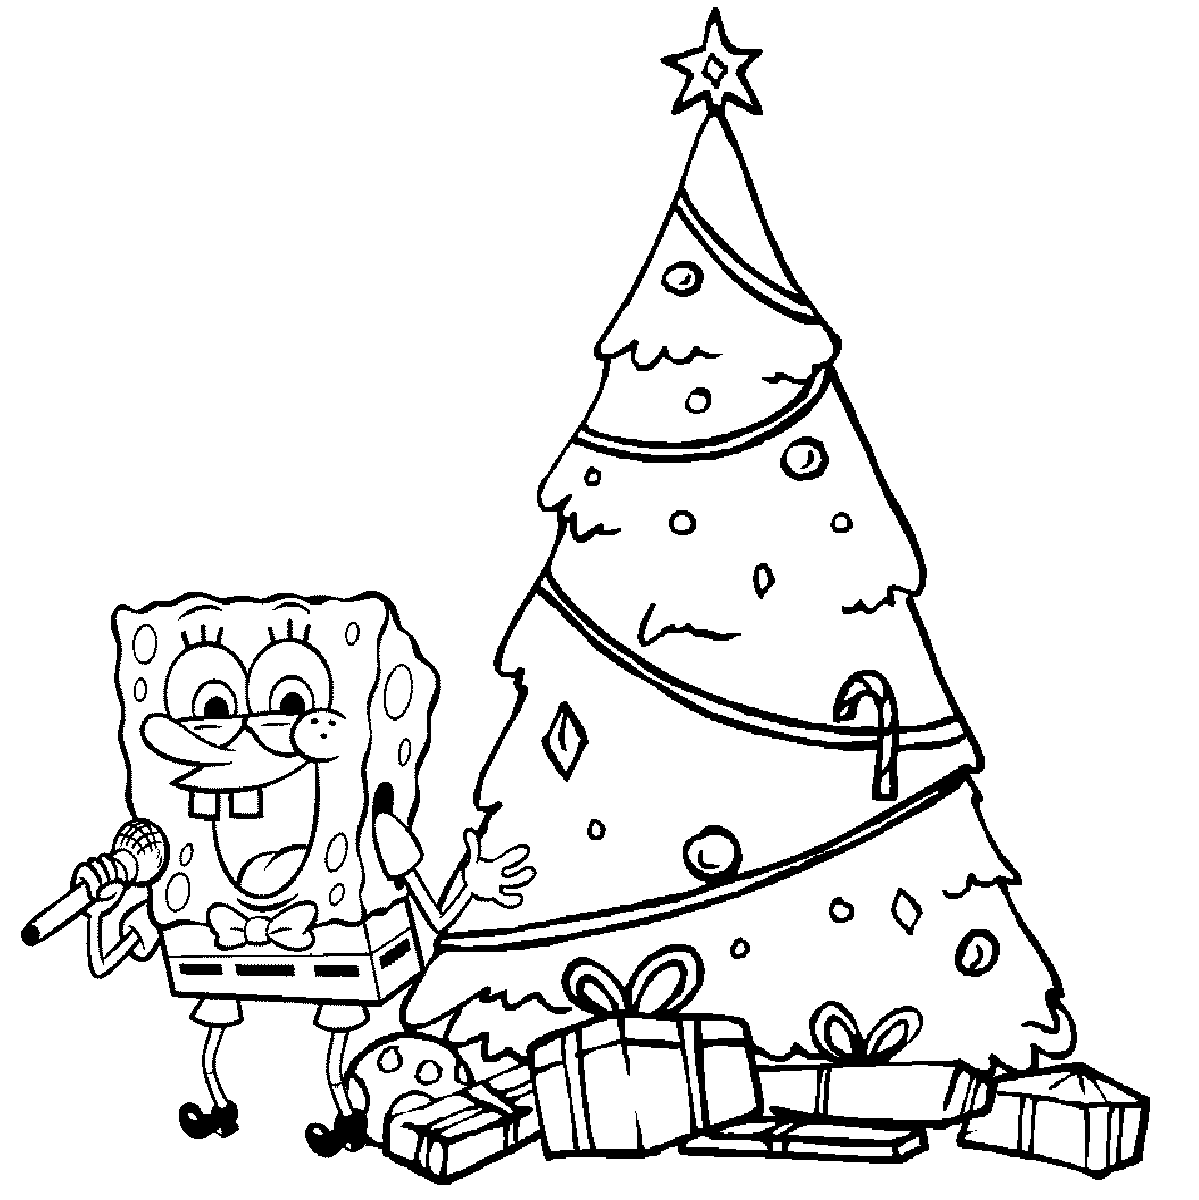 Desenho para colorir e imprimir de Natal do Bob Esponja